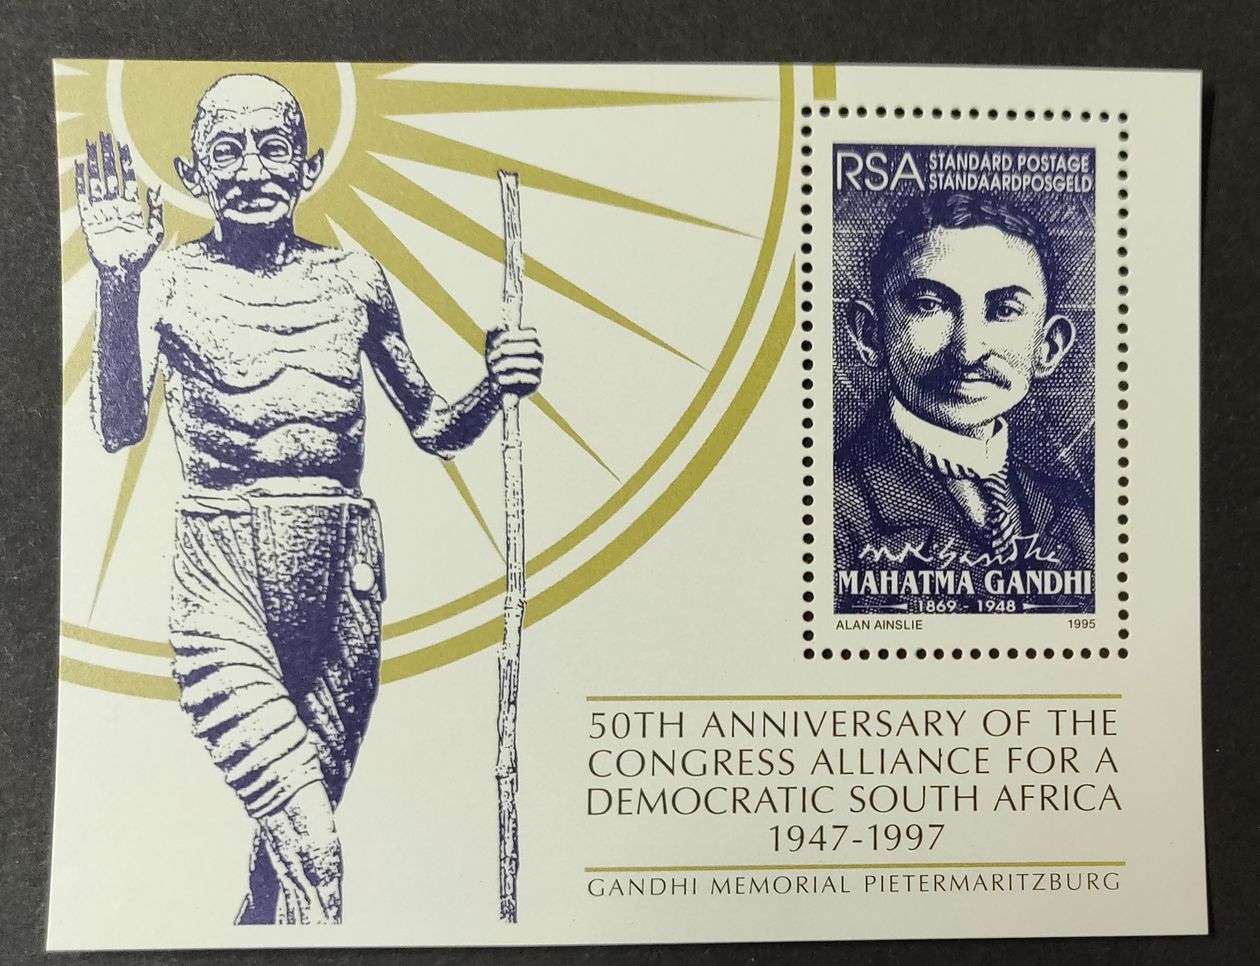 दुनिया के चालीस देश जारी करेंगे गांधी पर विशेष डाक टिकट...गांधी की 150वीं जन्मशती